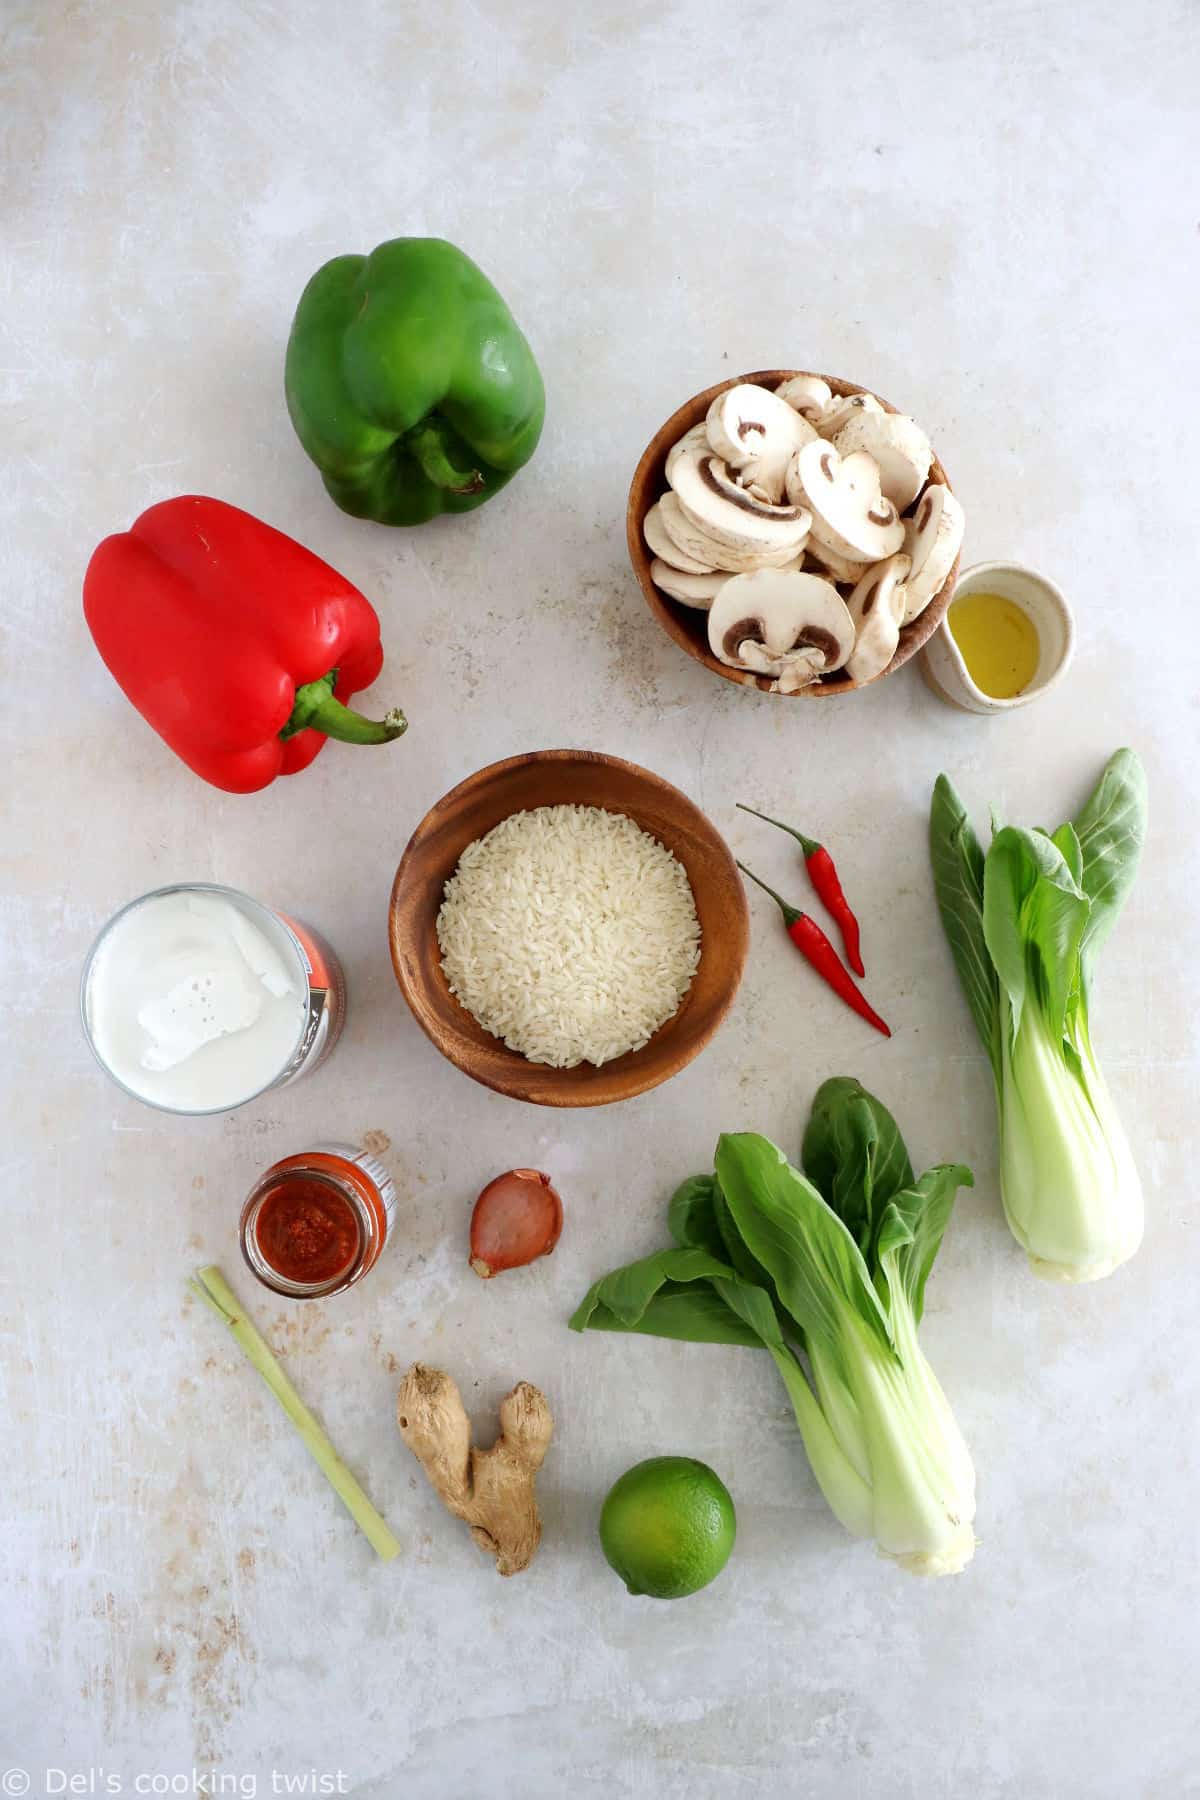 Le curry rouge thaï au bok choy est une recette de curry rouge aux légumes très simple à préparer en 30 minutes seulement.